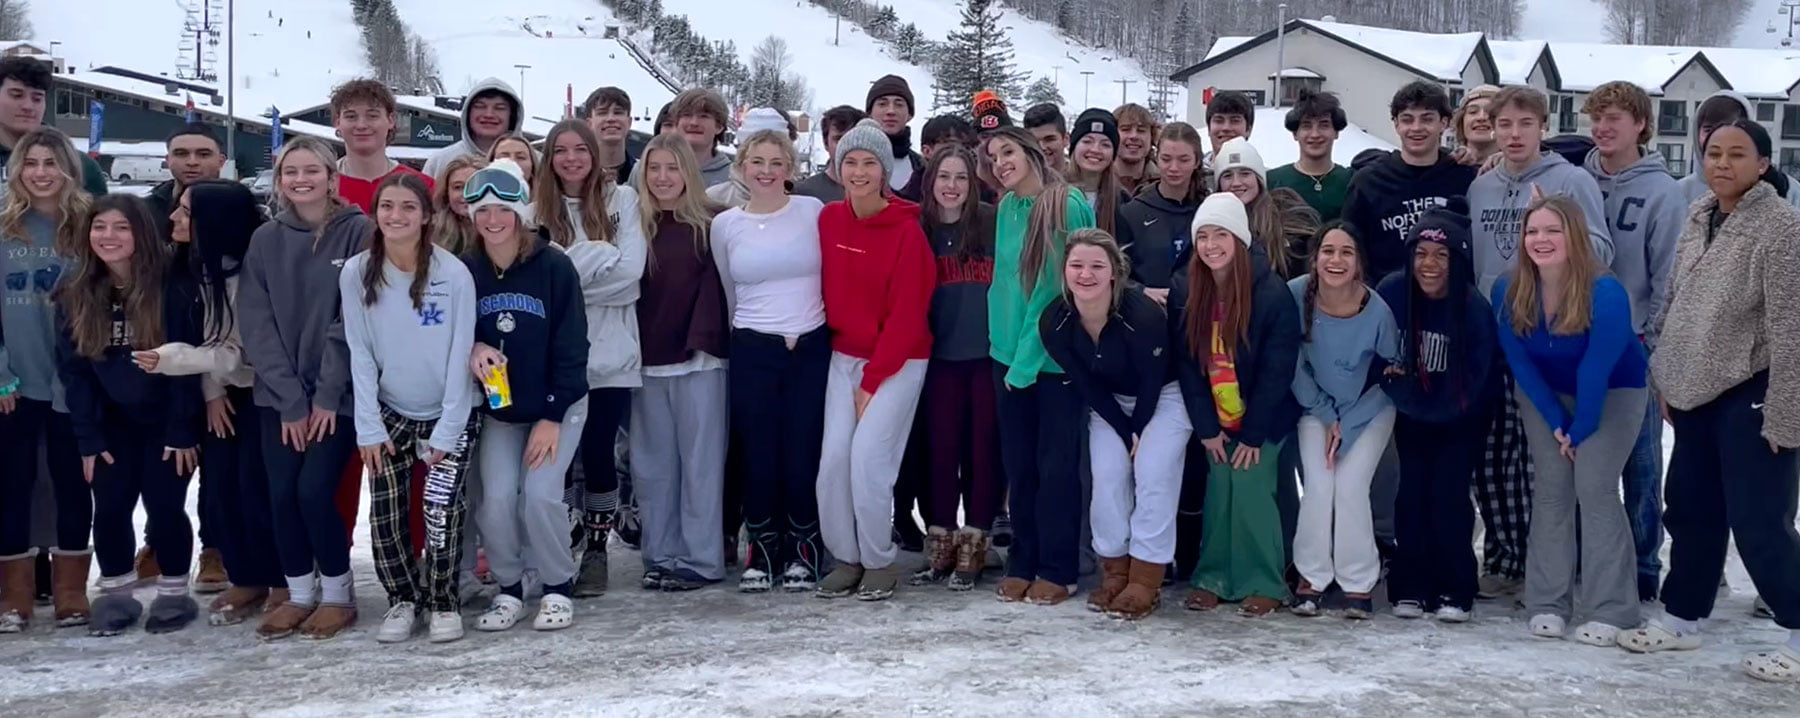 Ski Travel group at Mt St-Anne ski resort